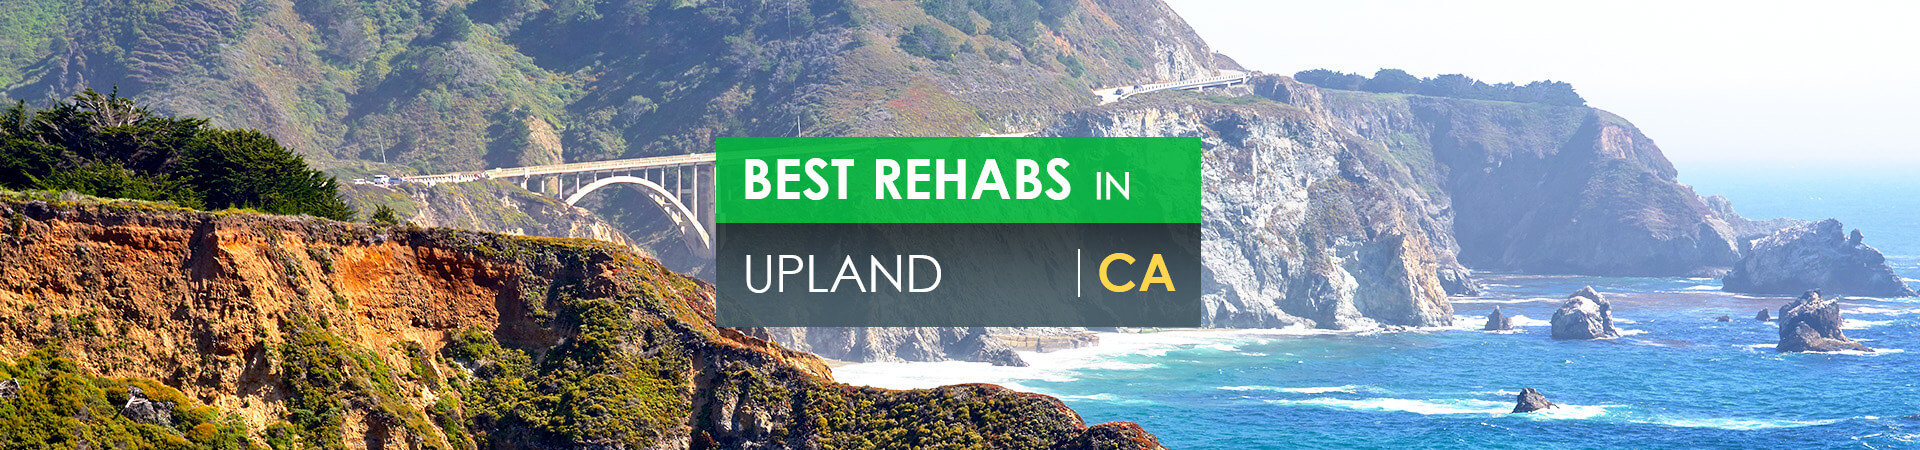 Best rehabs in Upland, CA